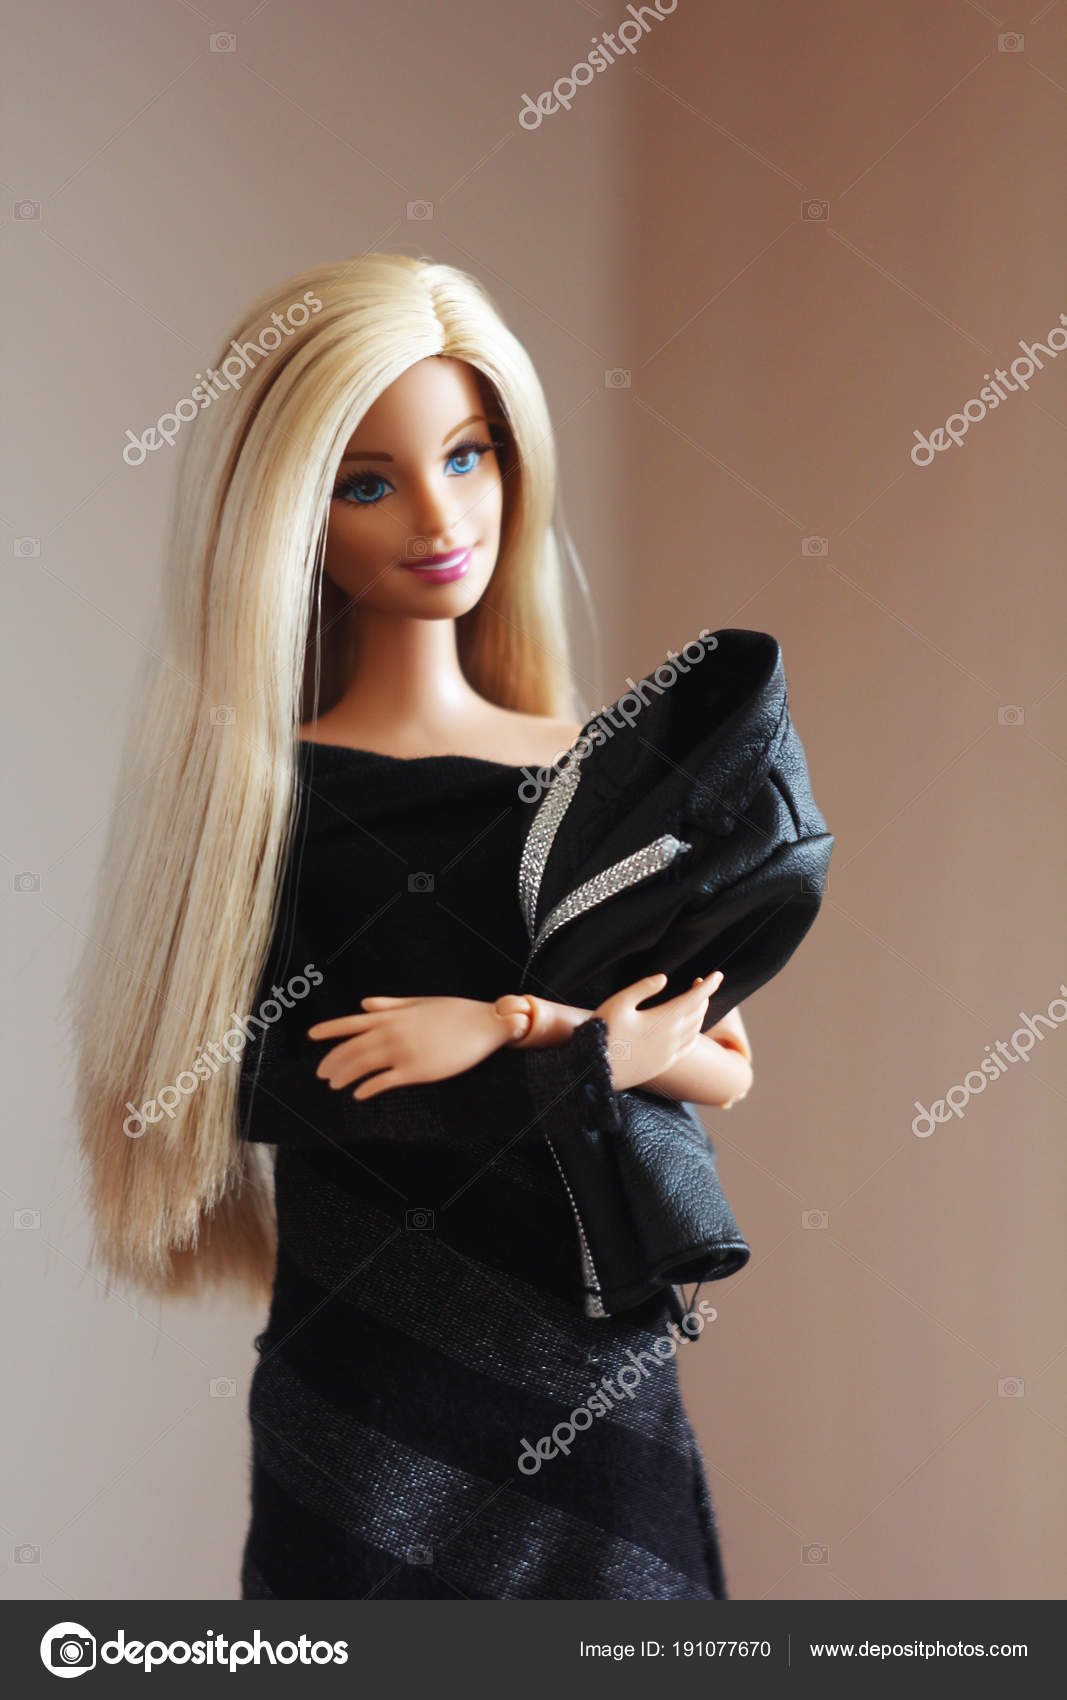 Barbie - Boneca caucasiana com cabelo extra longo, roupa e